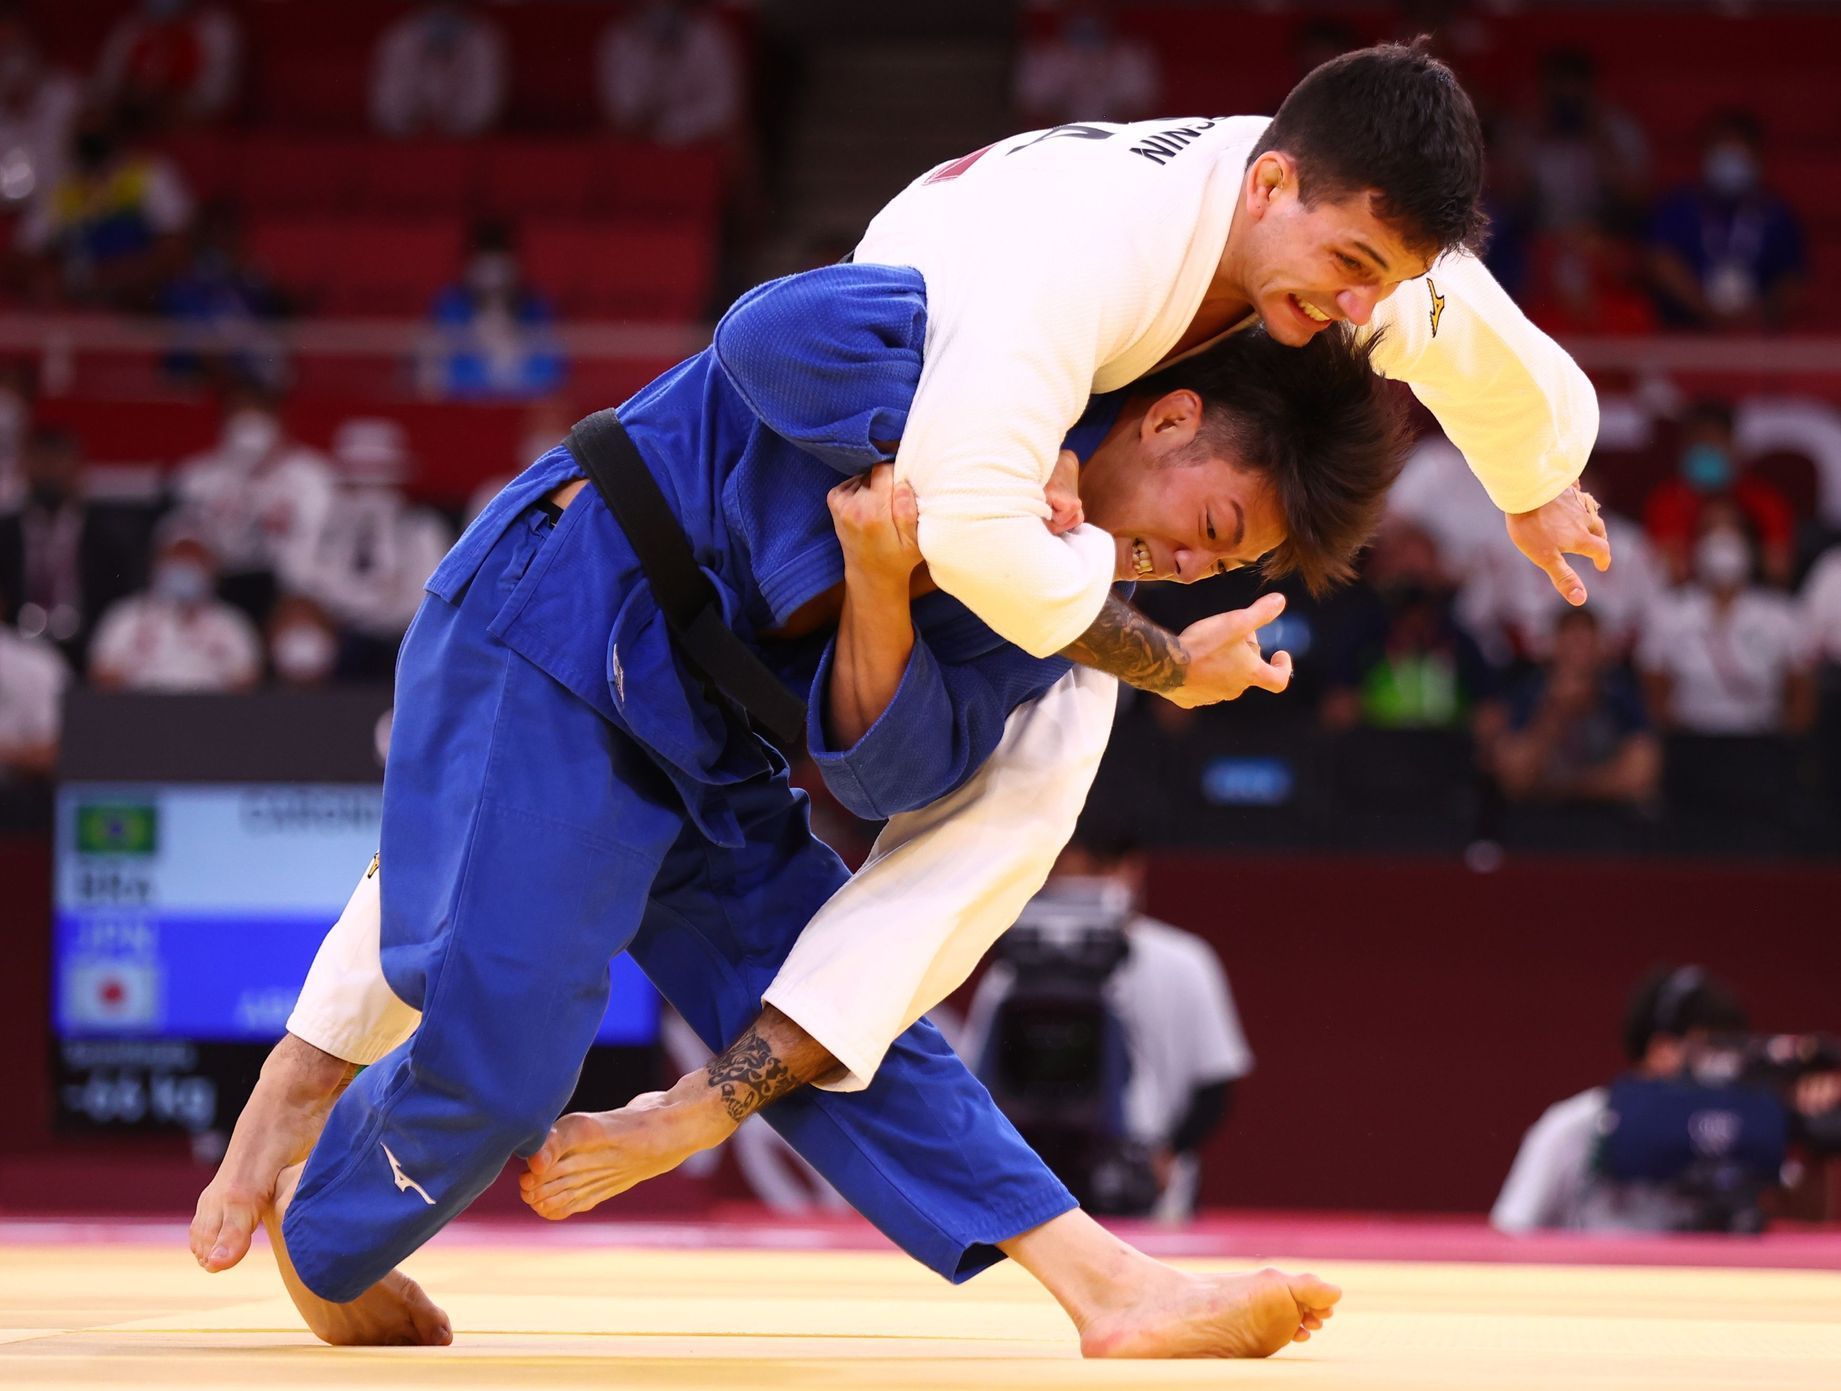 Hifumi Abe v semifinále turnaje judistů do 66 kg na olympiádě v Tokiu 2021